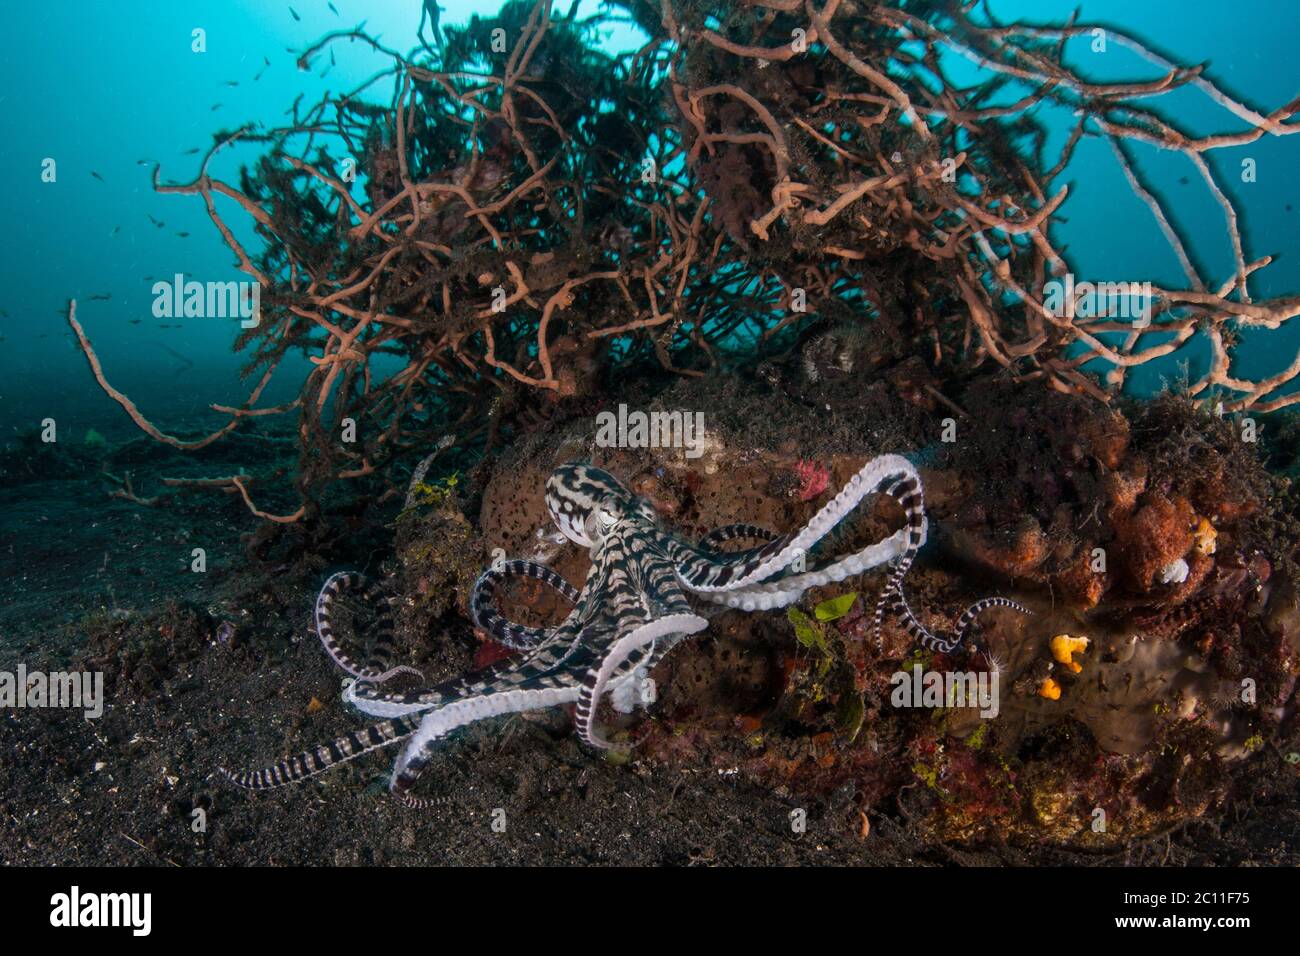 Ein imimischer Oktopus, Thaumoctopus micus, kommt auf dem schwarzen Sand am Meeresboden in der Lembeh Strait, Indonesien vor. Dieser Kopffüßer ahmt oft andere Arten nach. Stockfoto